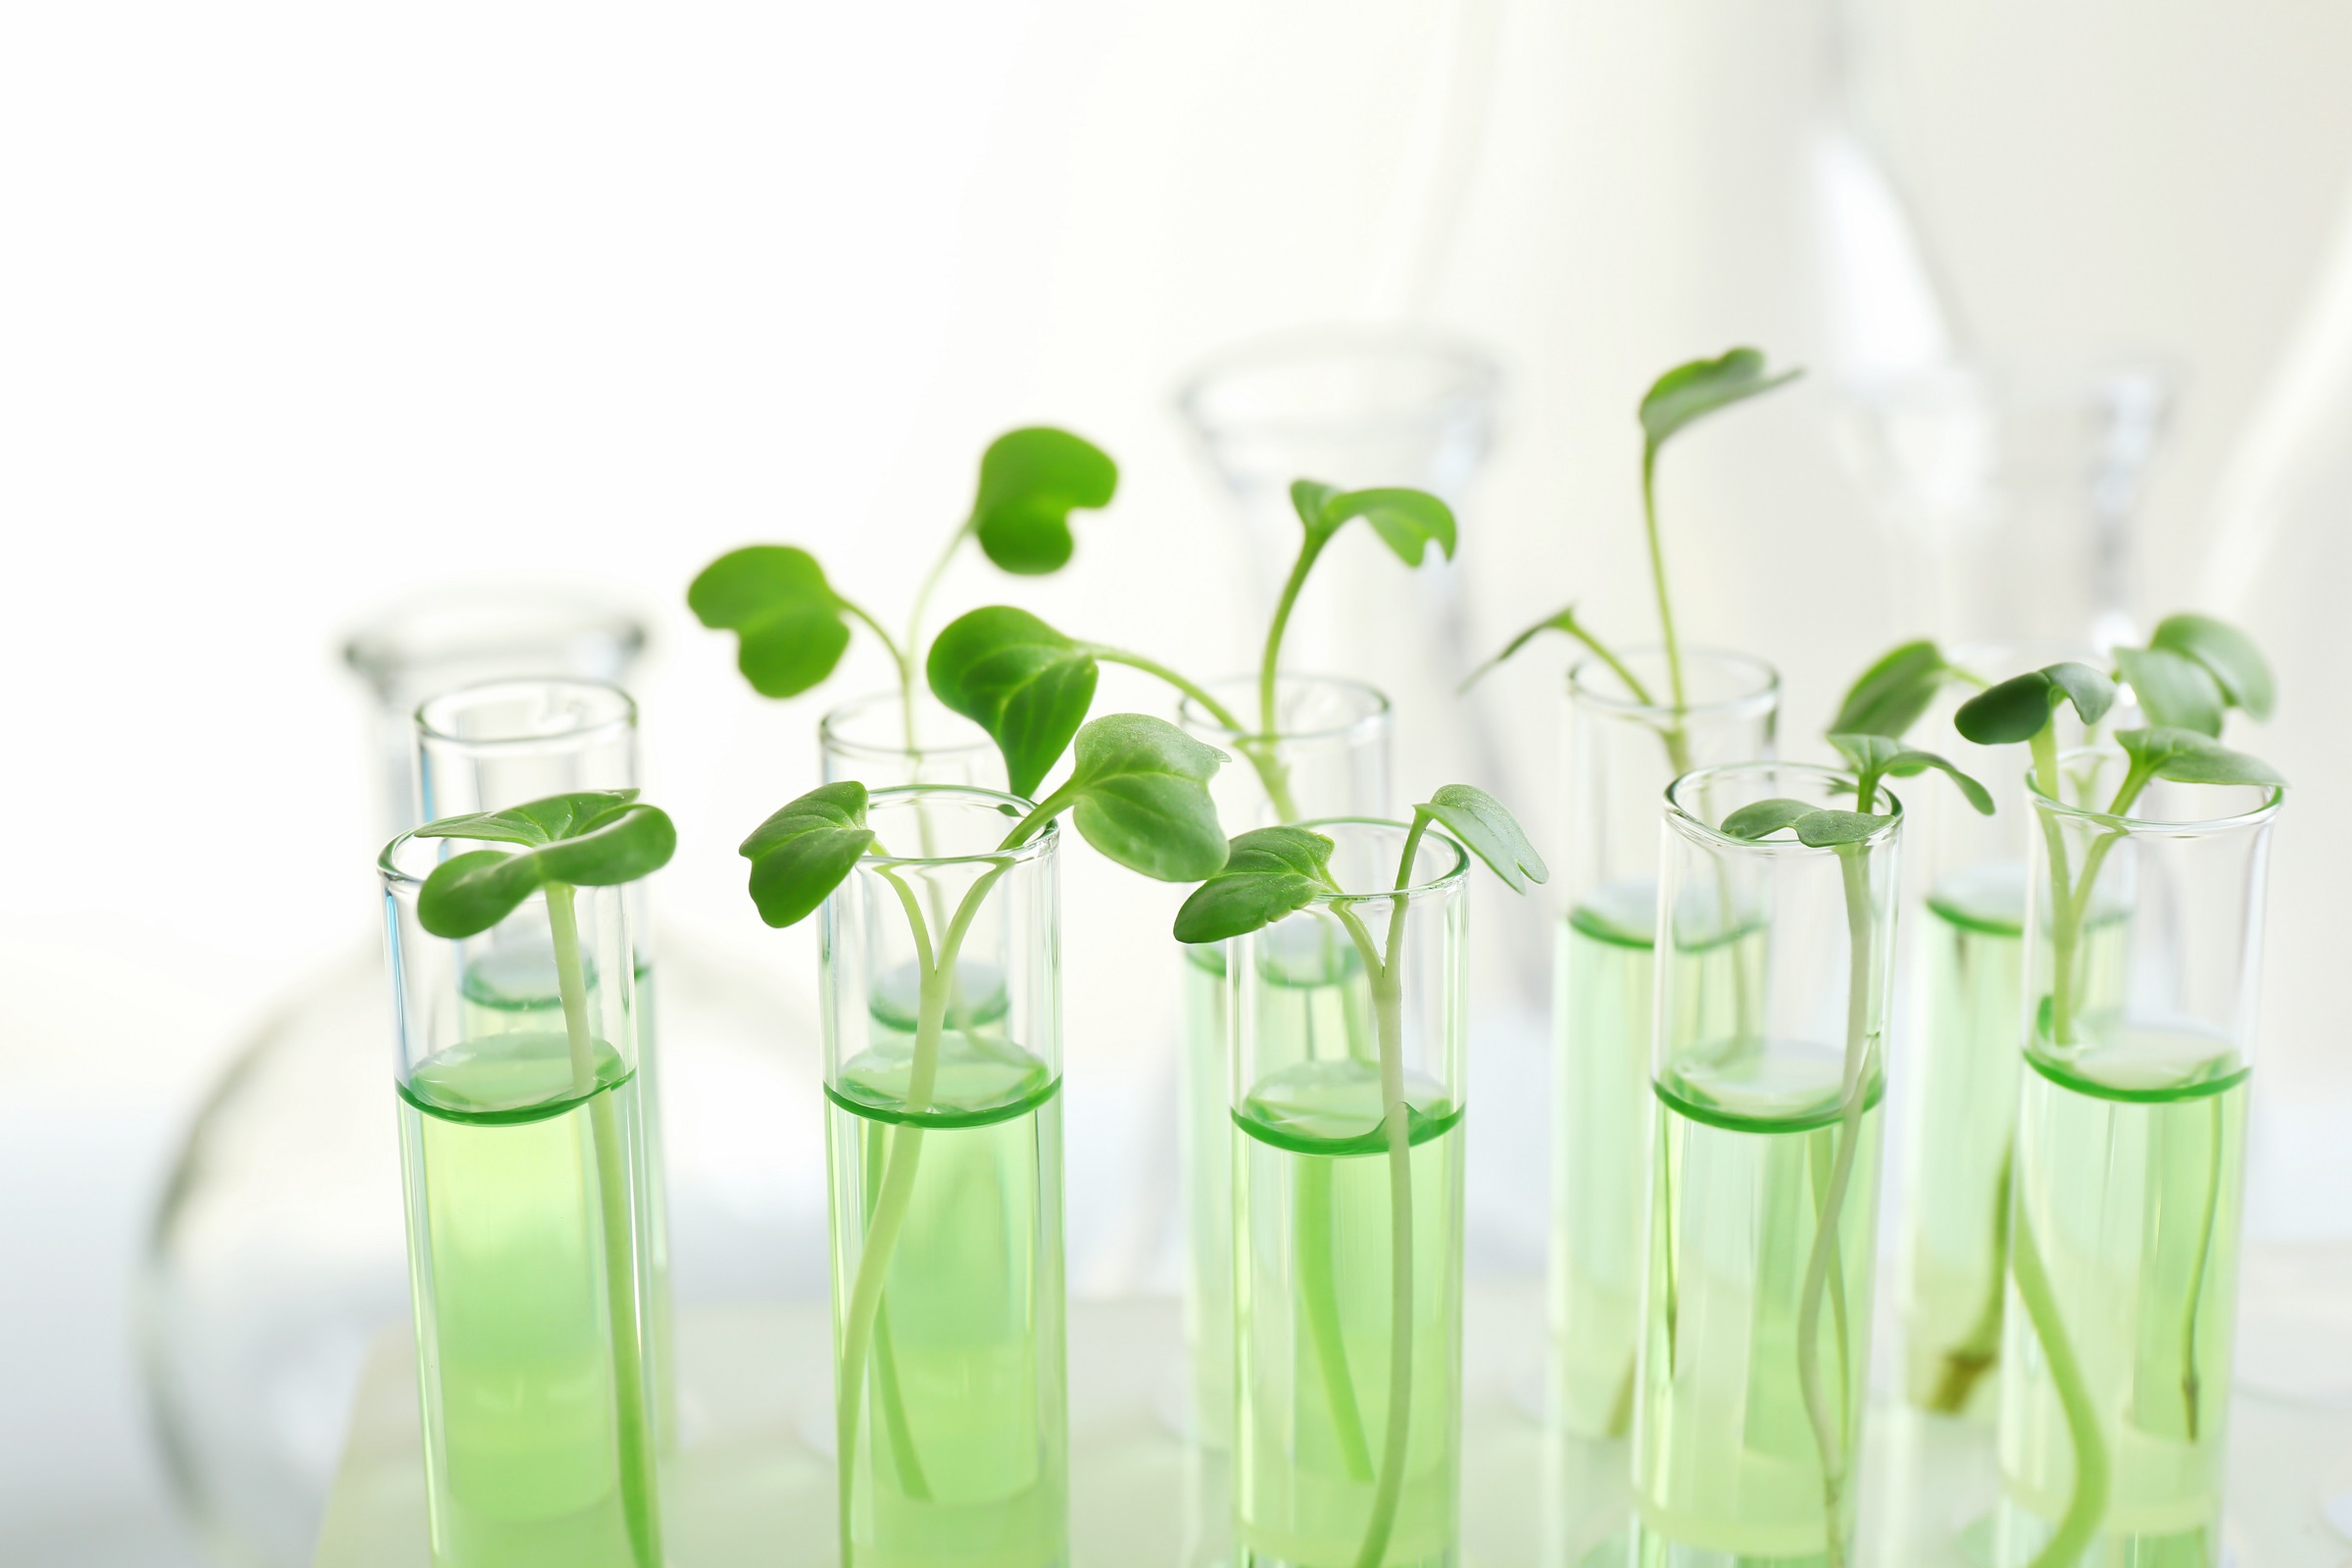 Водоросли в пробирке. Растения в пробирках. Клонирование растений. In vitro растения. Биотехнология растений.